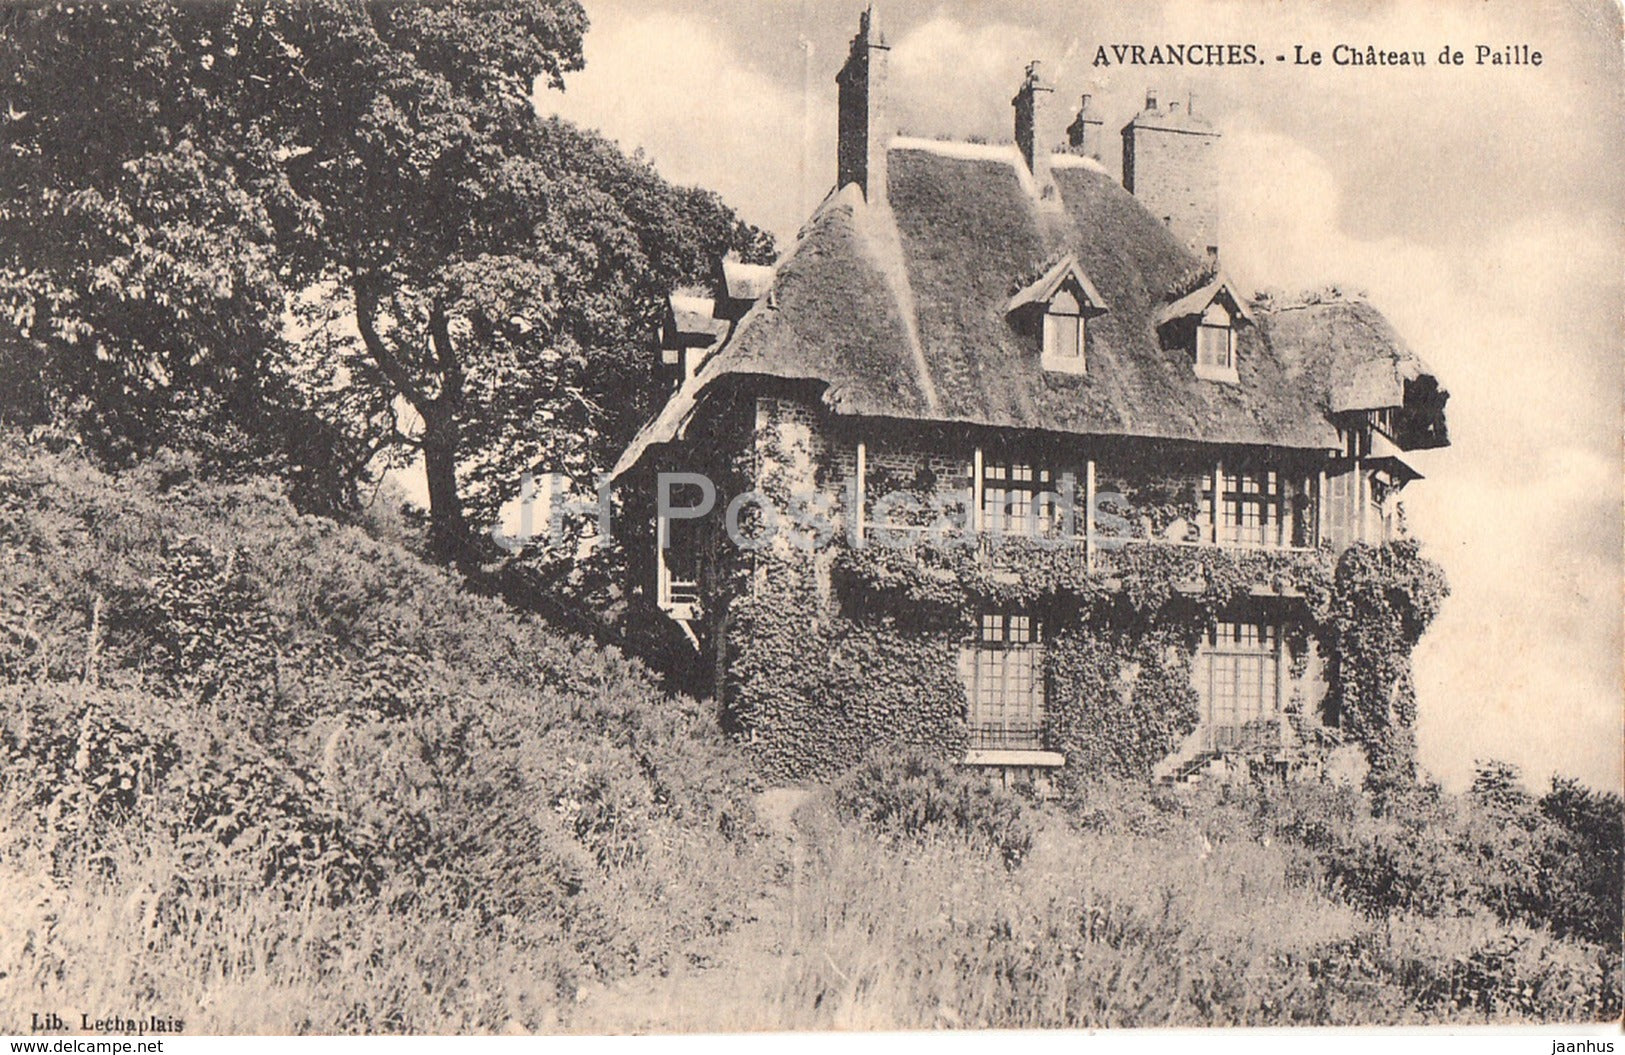 Avranches - Le Chateau de Paille - castle - old postcard - France - unused - JH Postcards